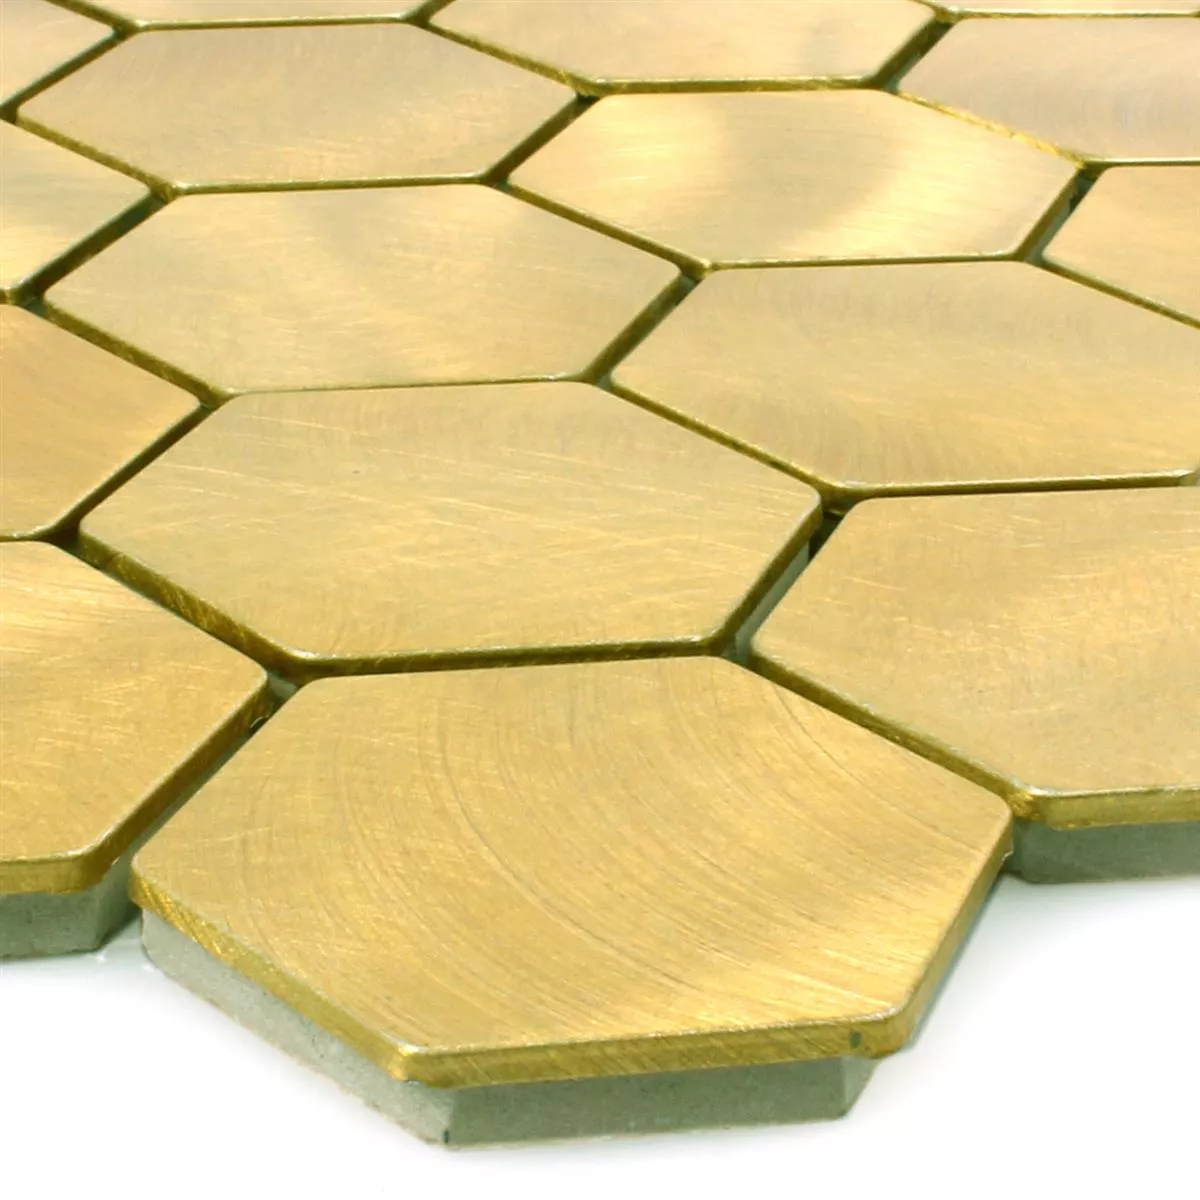 Mosaic Tiles Aluminium Manhatten Hexagon Gold